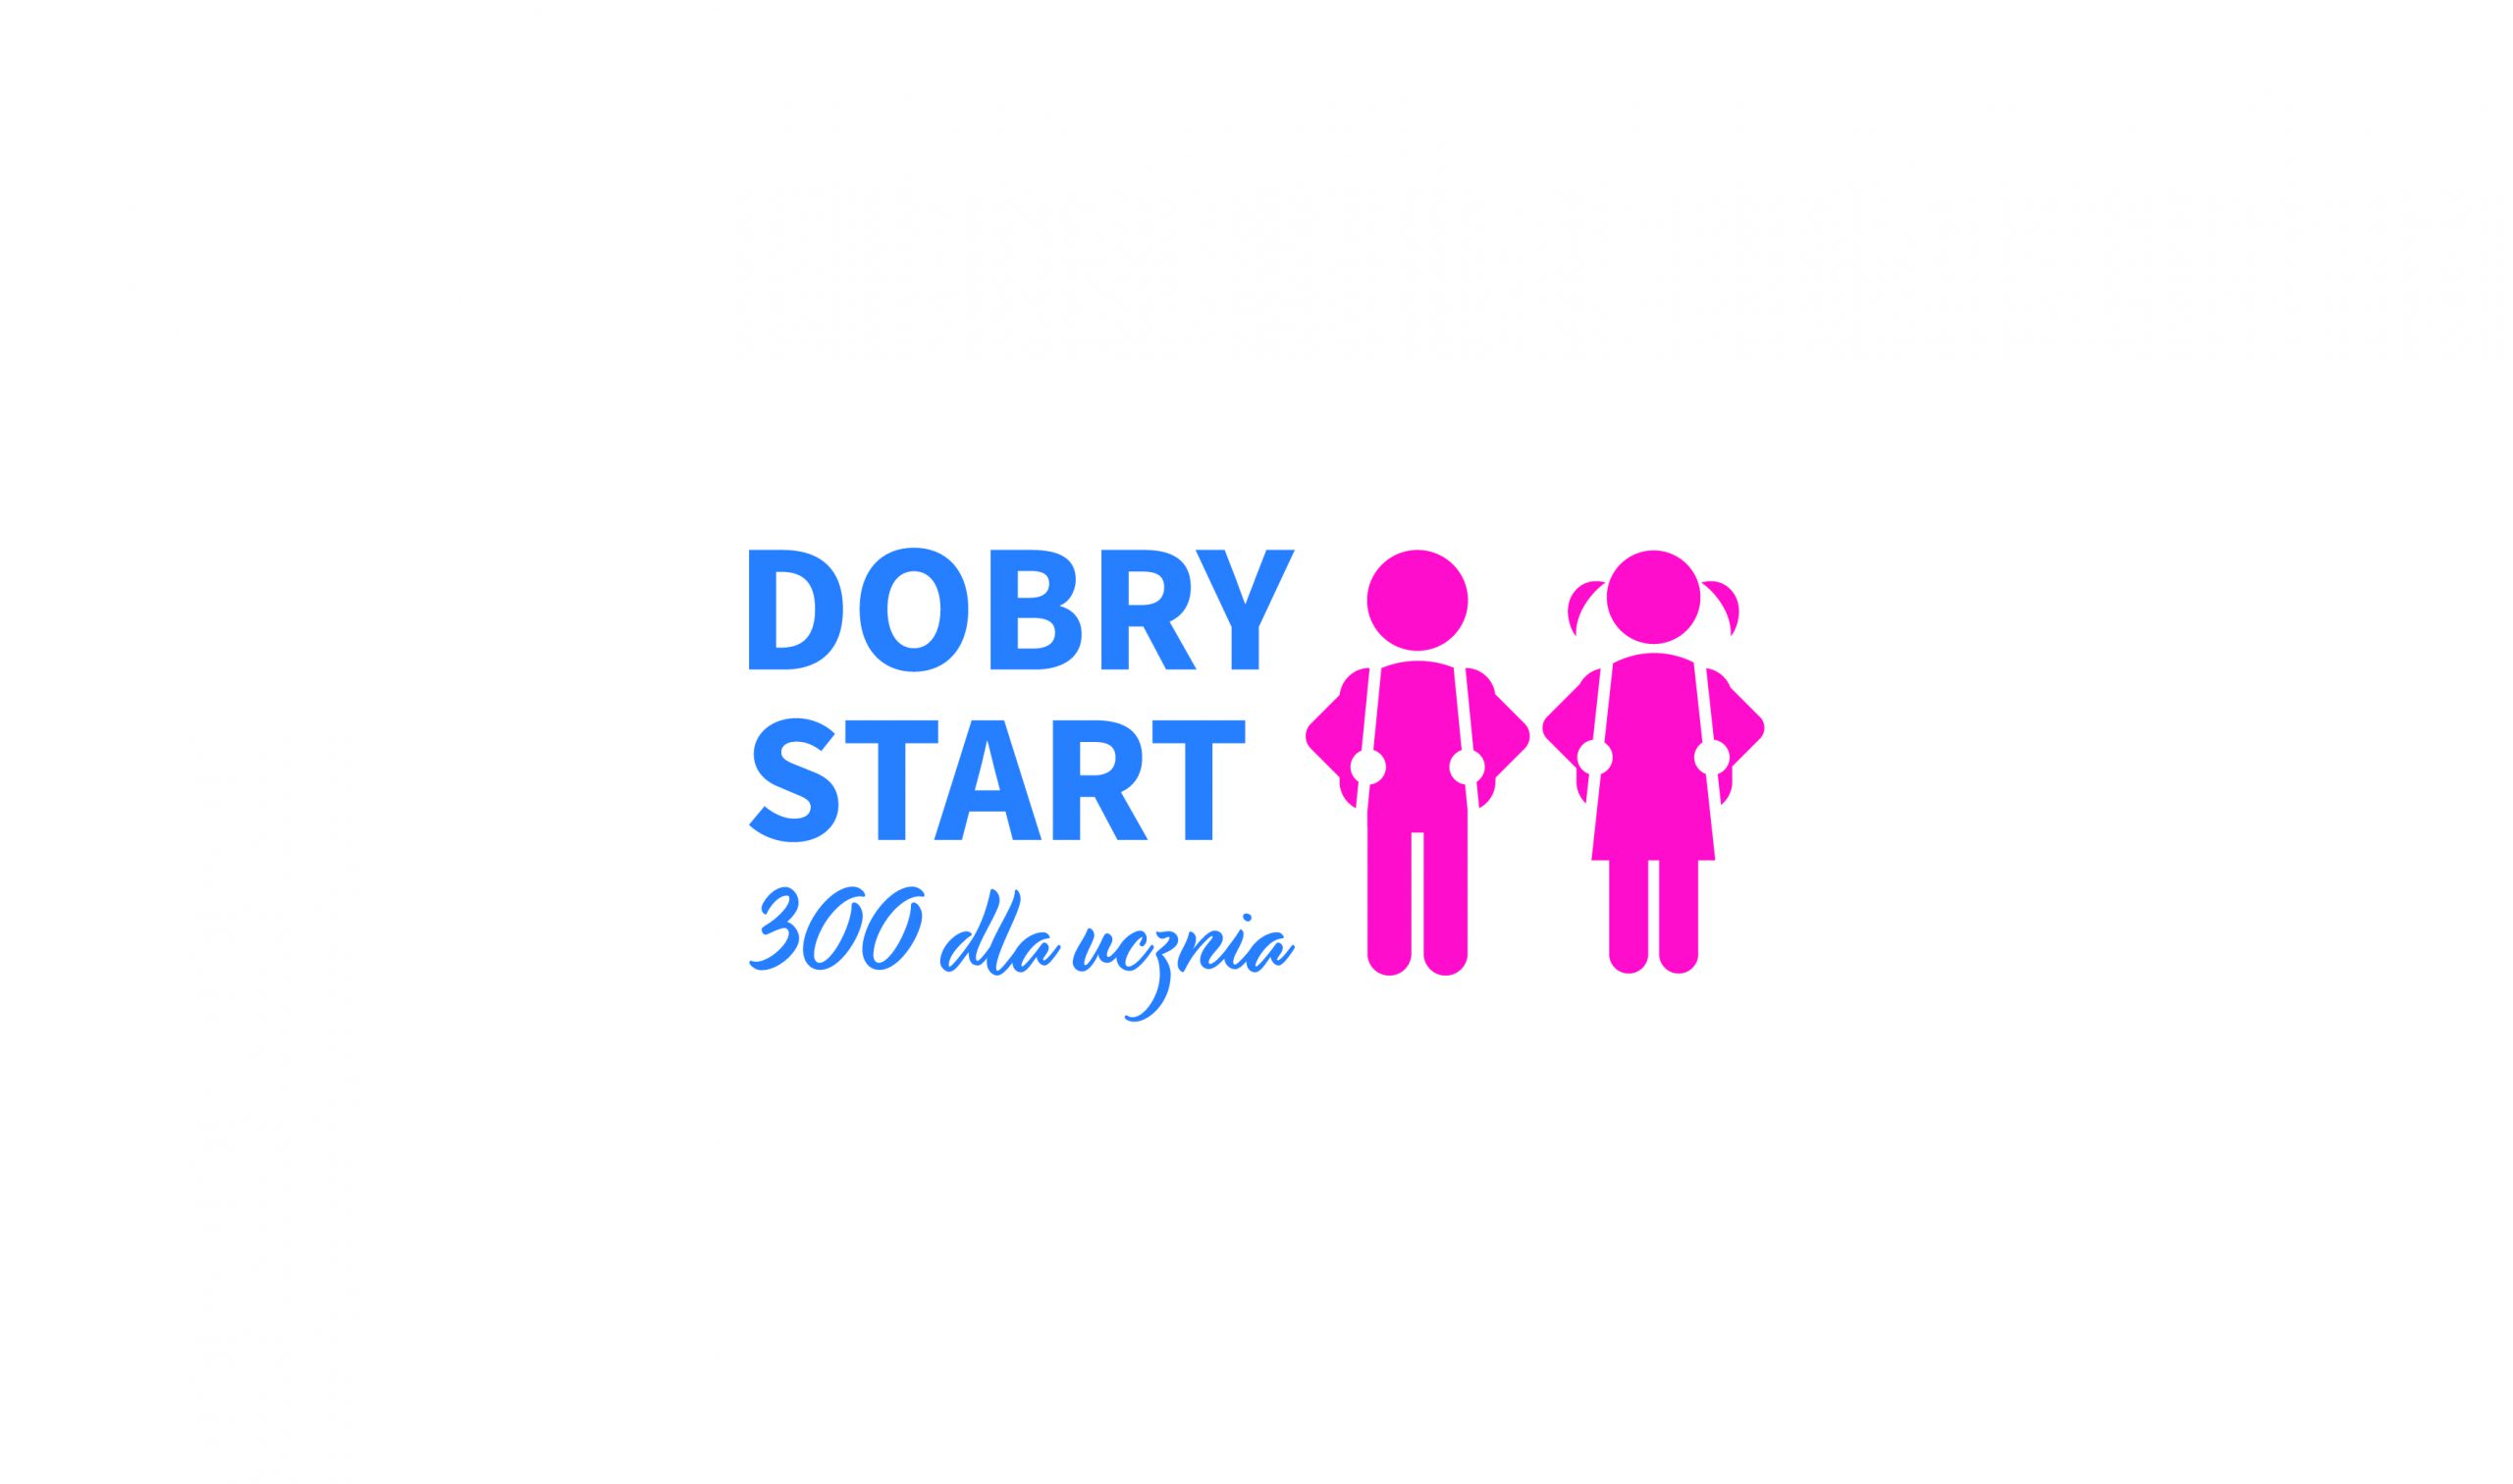 Na białym tle na środku tekst w kolorze niebieskim "Dobry Start 300 dla ucznia" oraz różowe grafiki przedstawiające chłopca i dziewczynkę.